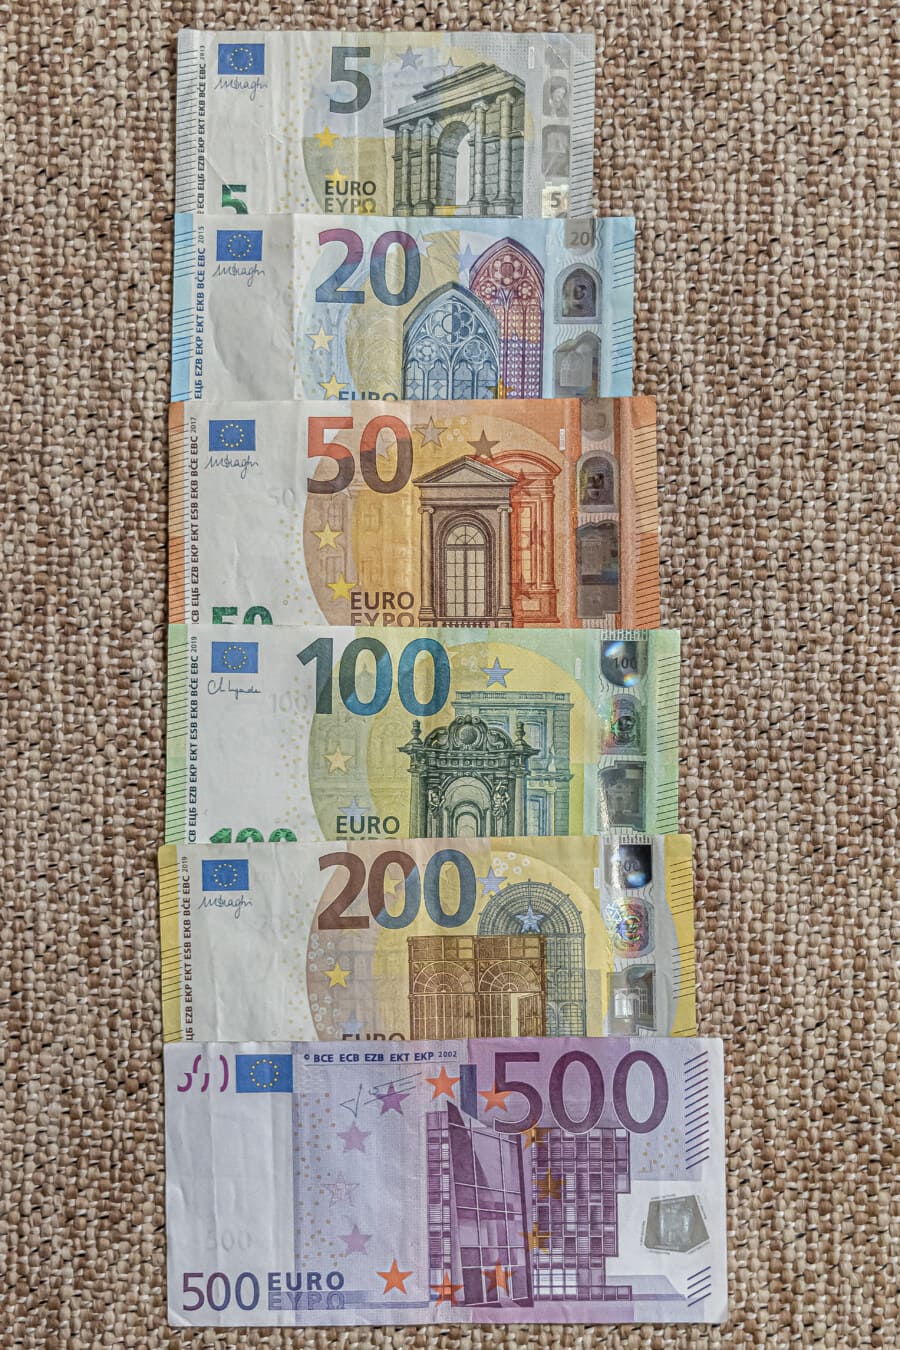 stive, bani, euro, numerar, uniunea europeană, creşterea economică, economia, moneda, hârtie, bancare